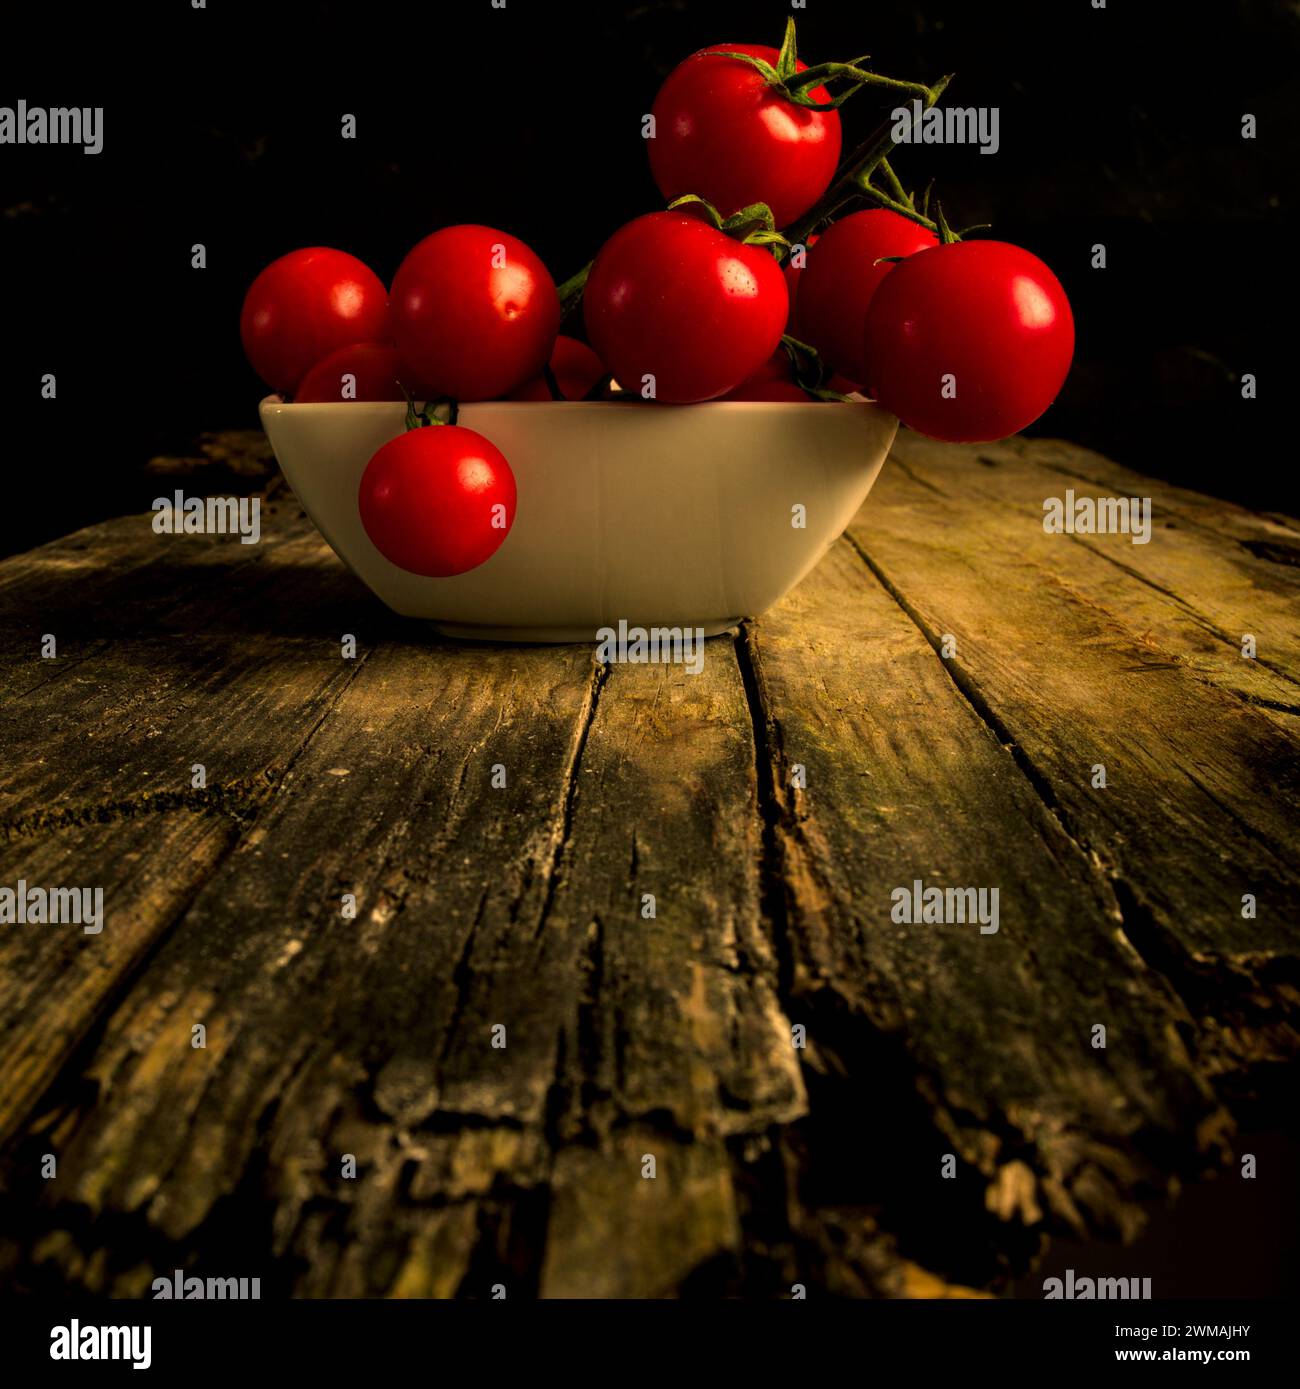 Pomodoro di Pachino: fresh, beautiful Italian tomato Stock Photo